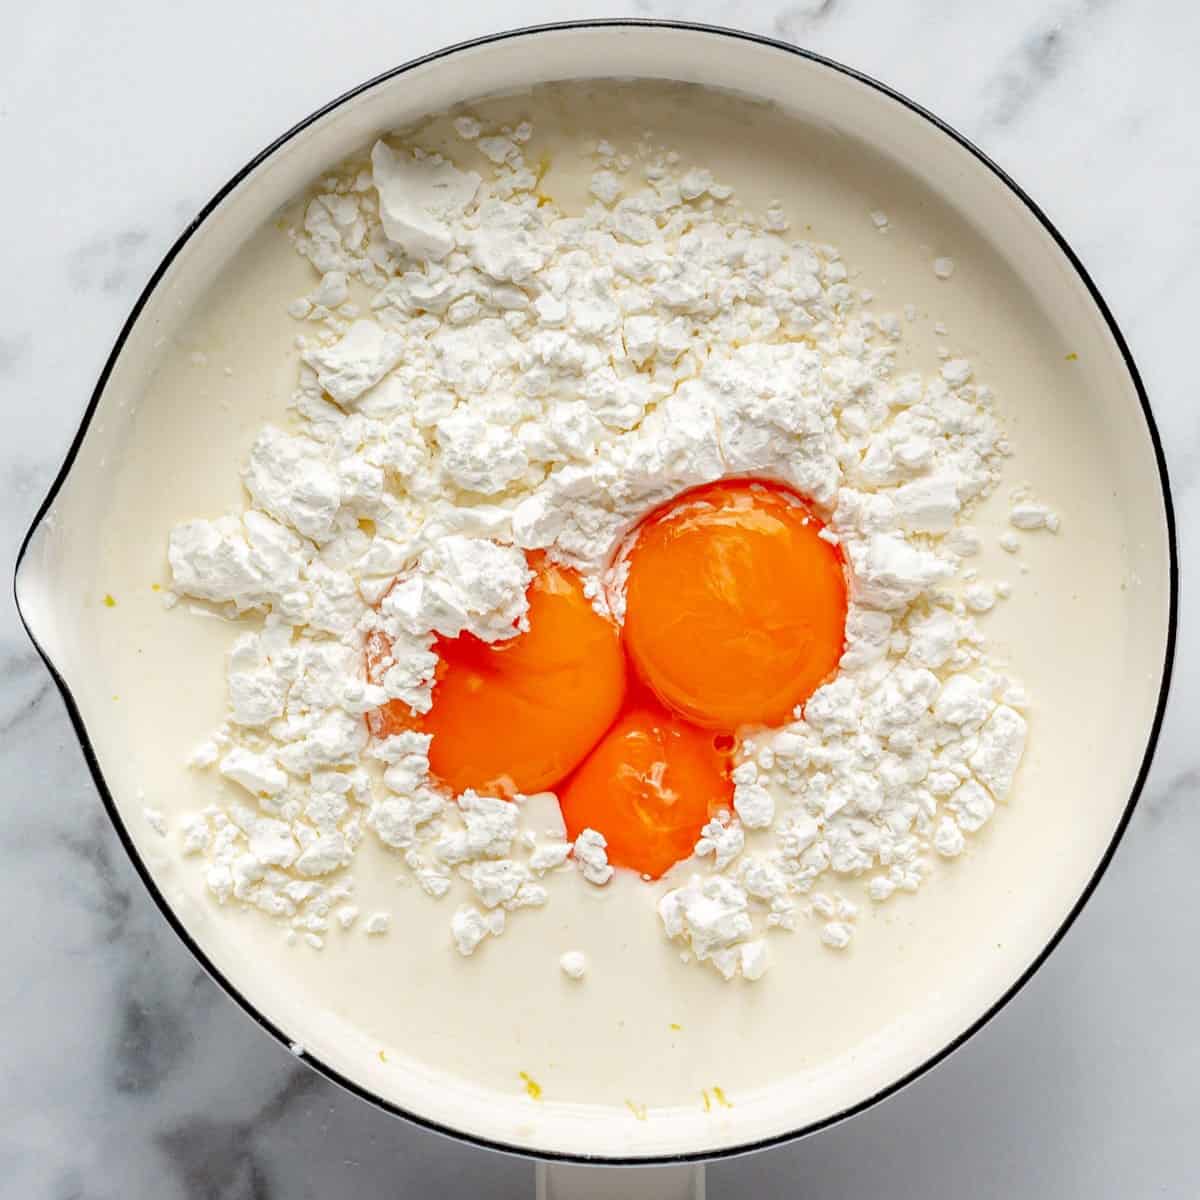 Flour, milks eggs, juice, and salt added to infused sugar.